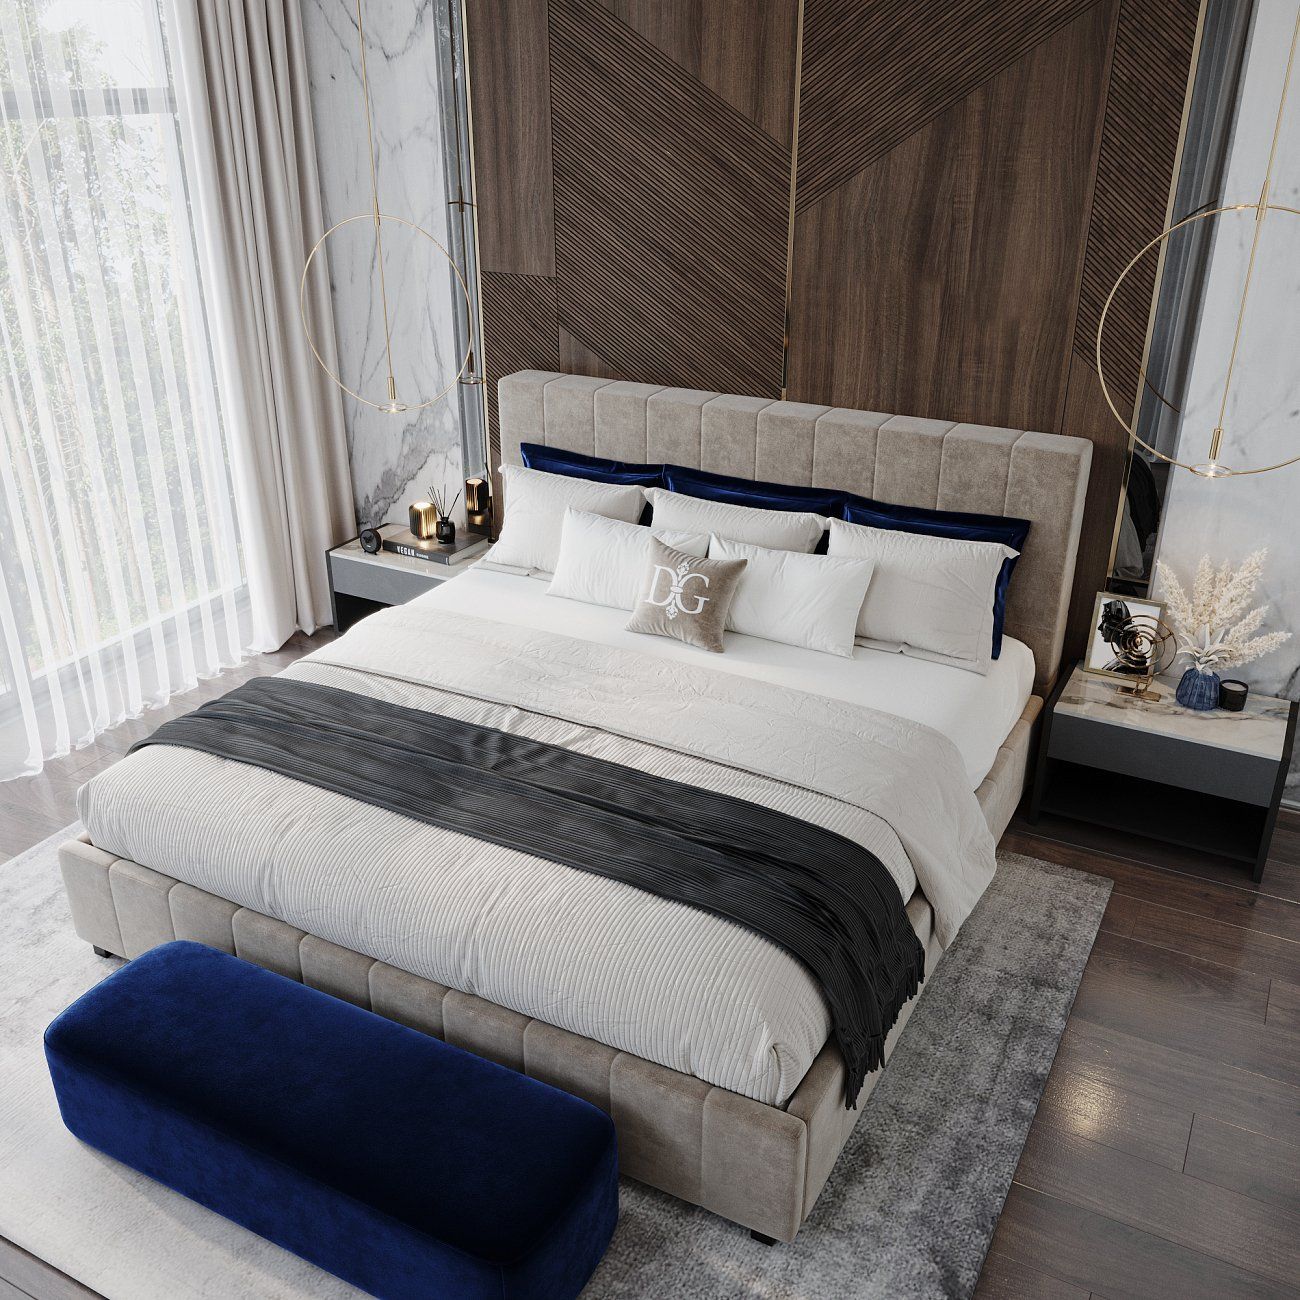 Кровать двуспальная с мягким изголовьем 180х200 см бежевая Shining Modern